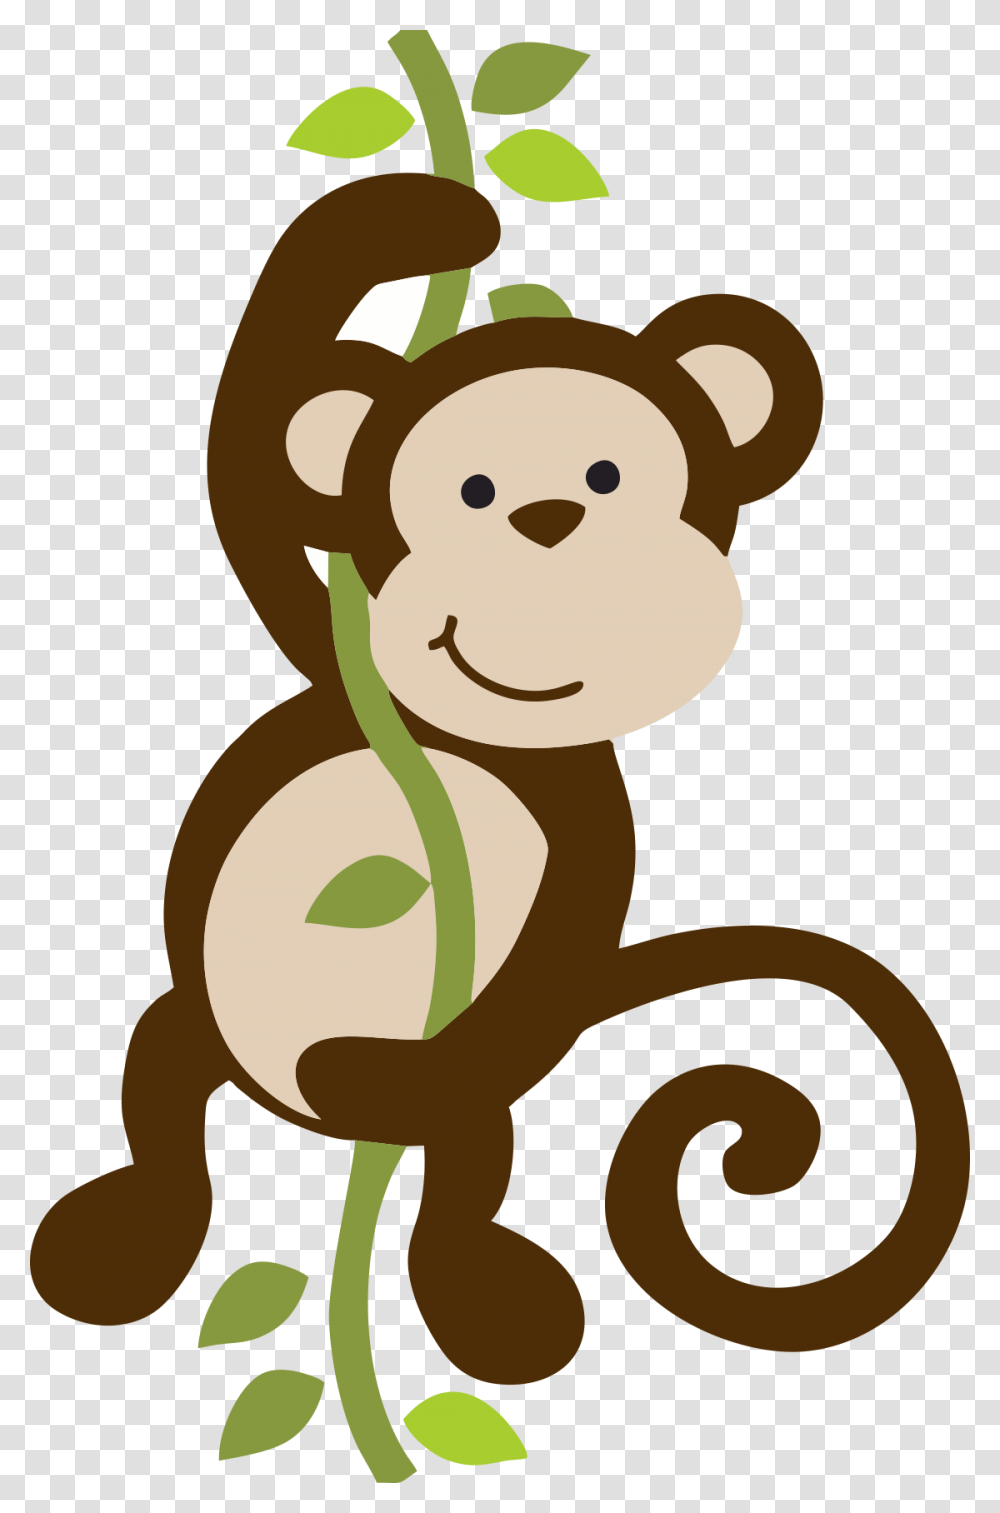 Imagem De Animais E Arca De No Macaco 2 Monkey Jungle Clipart, Plant, Alphabet, Animal Transparent Png